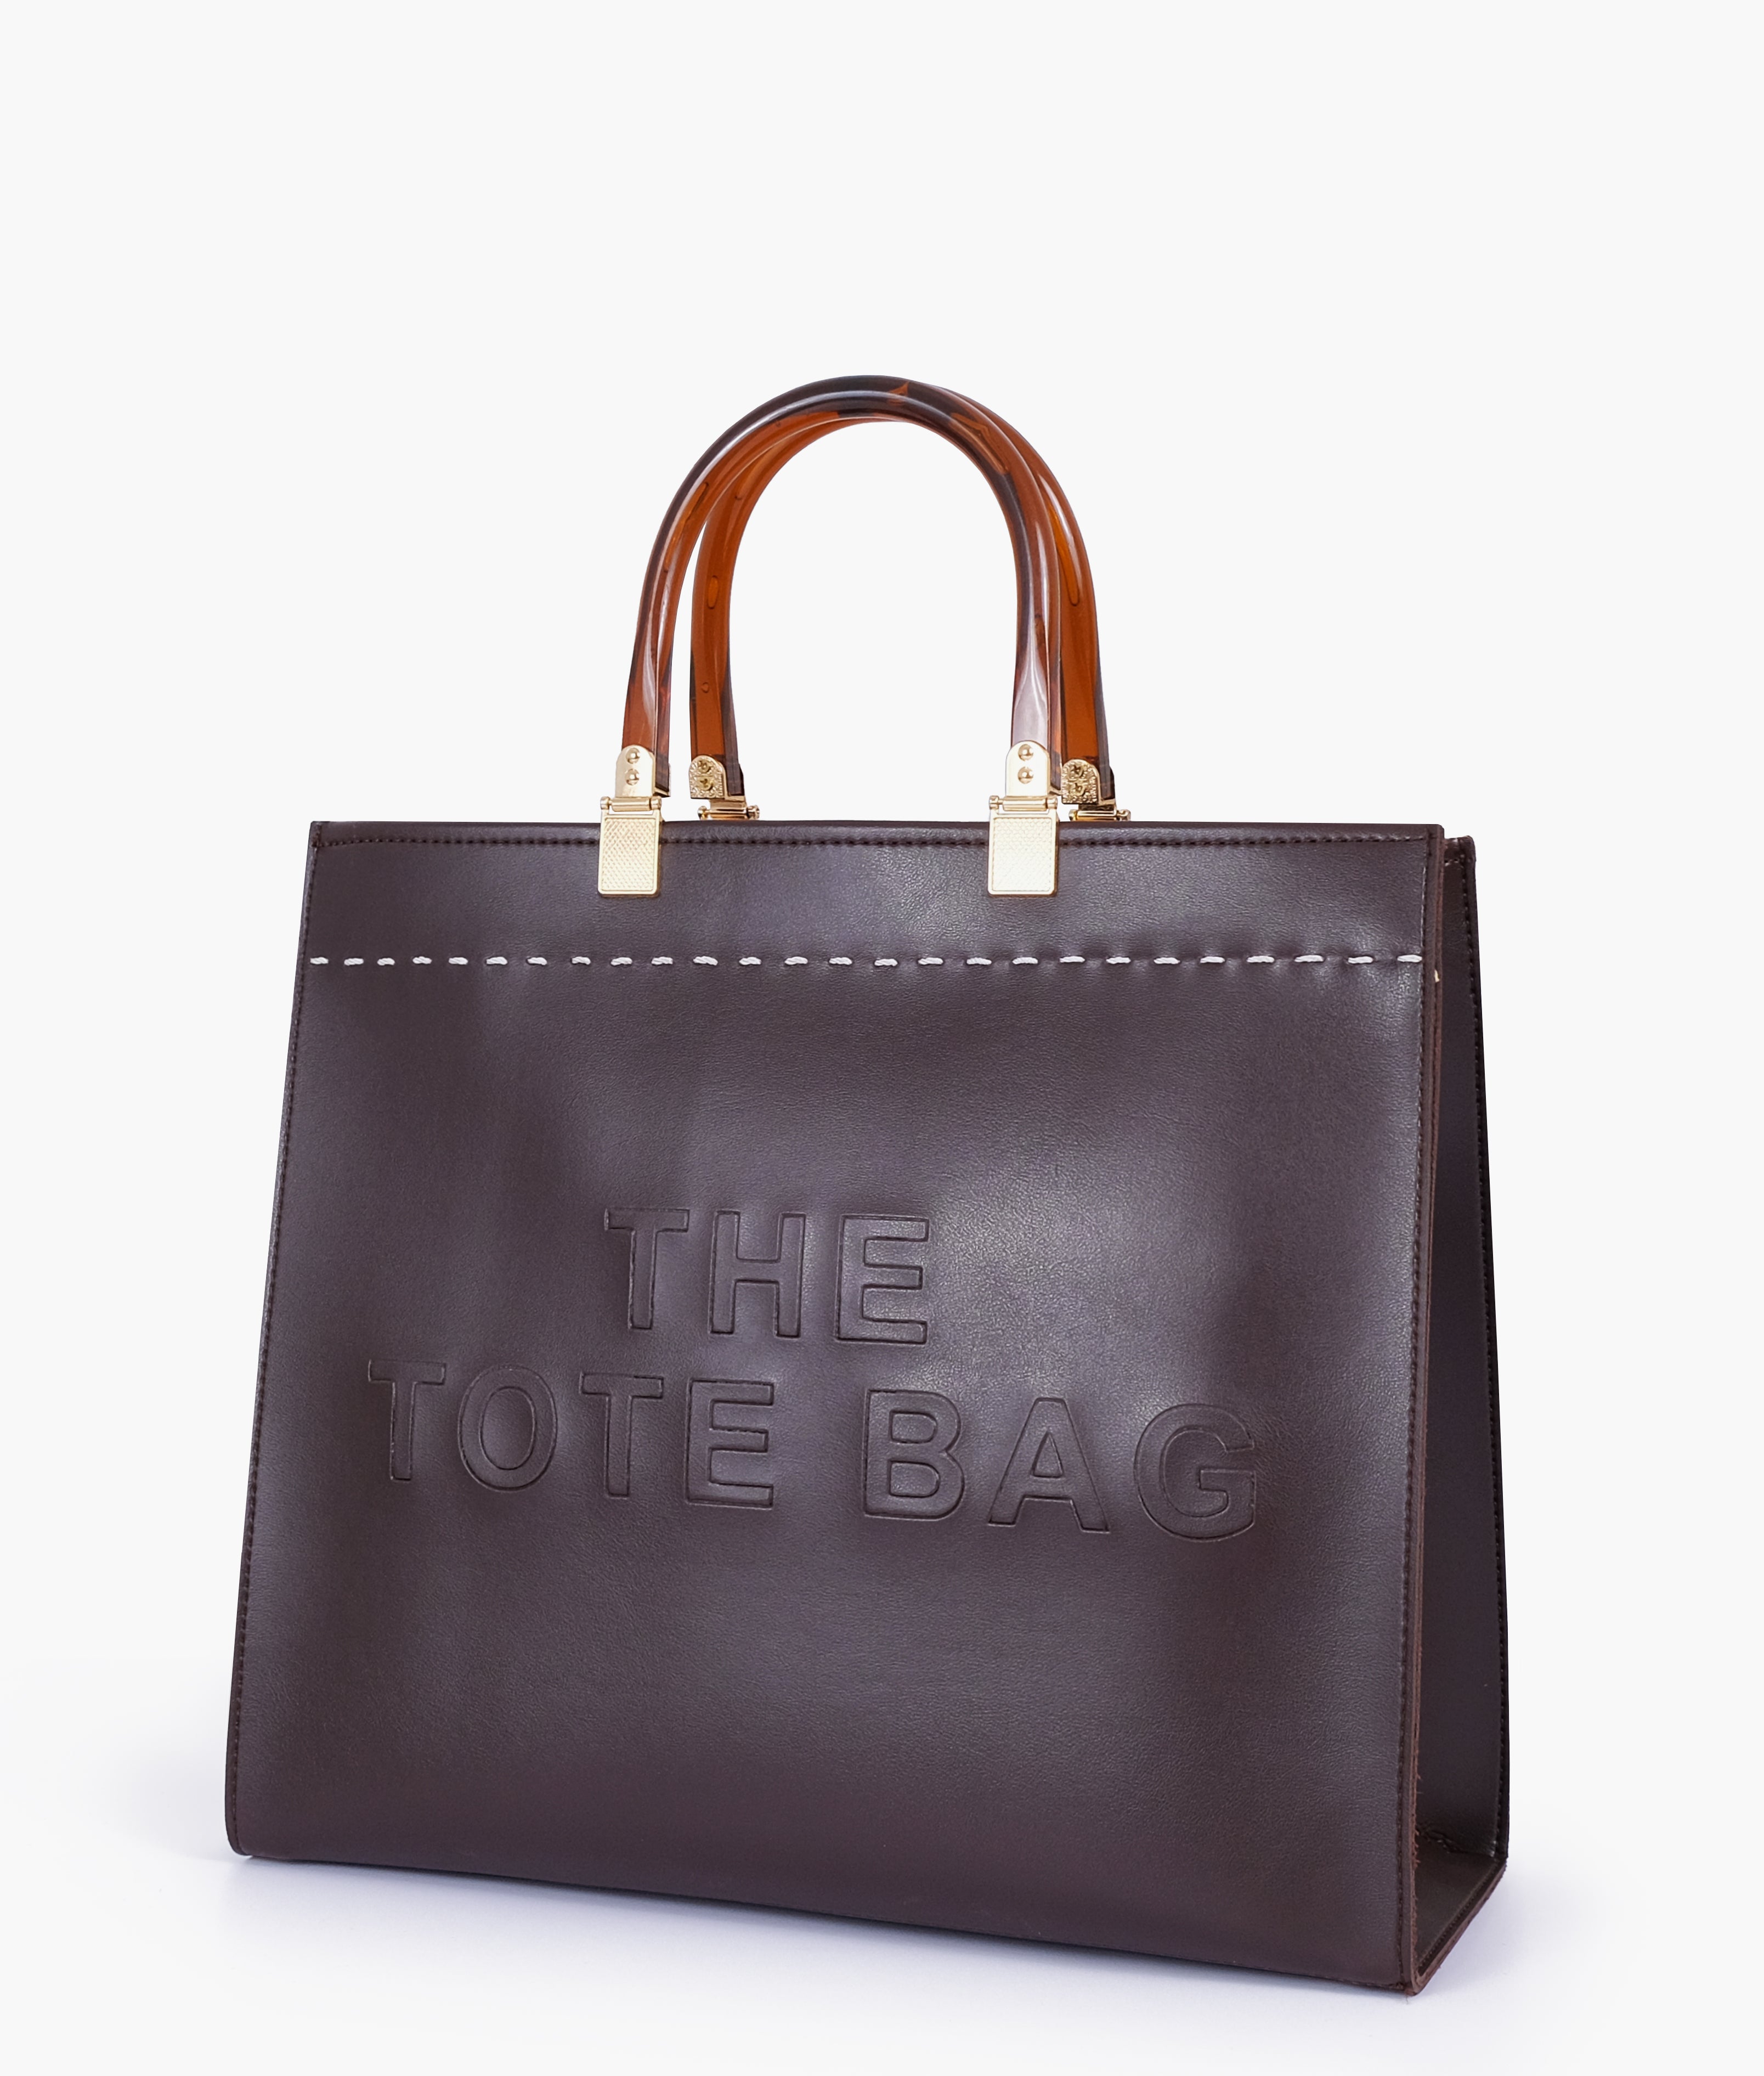 Dark brown signature tote bag